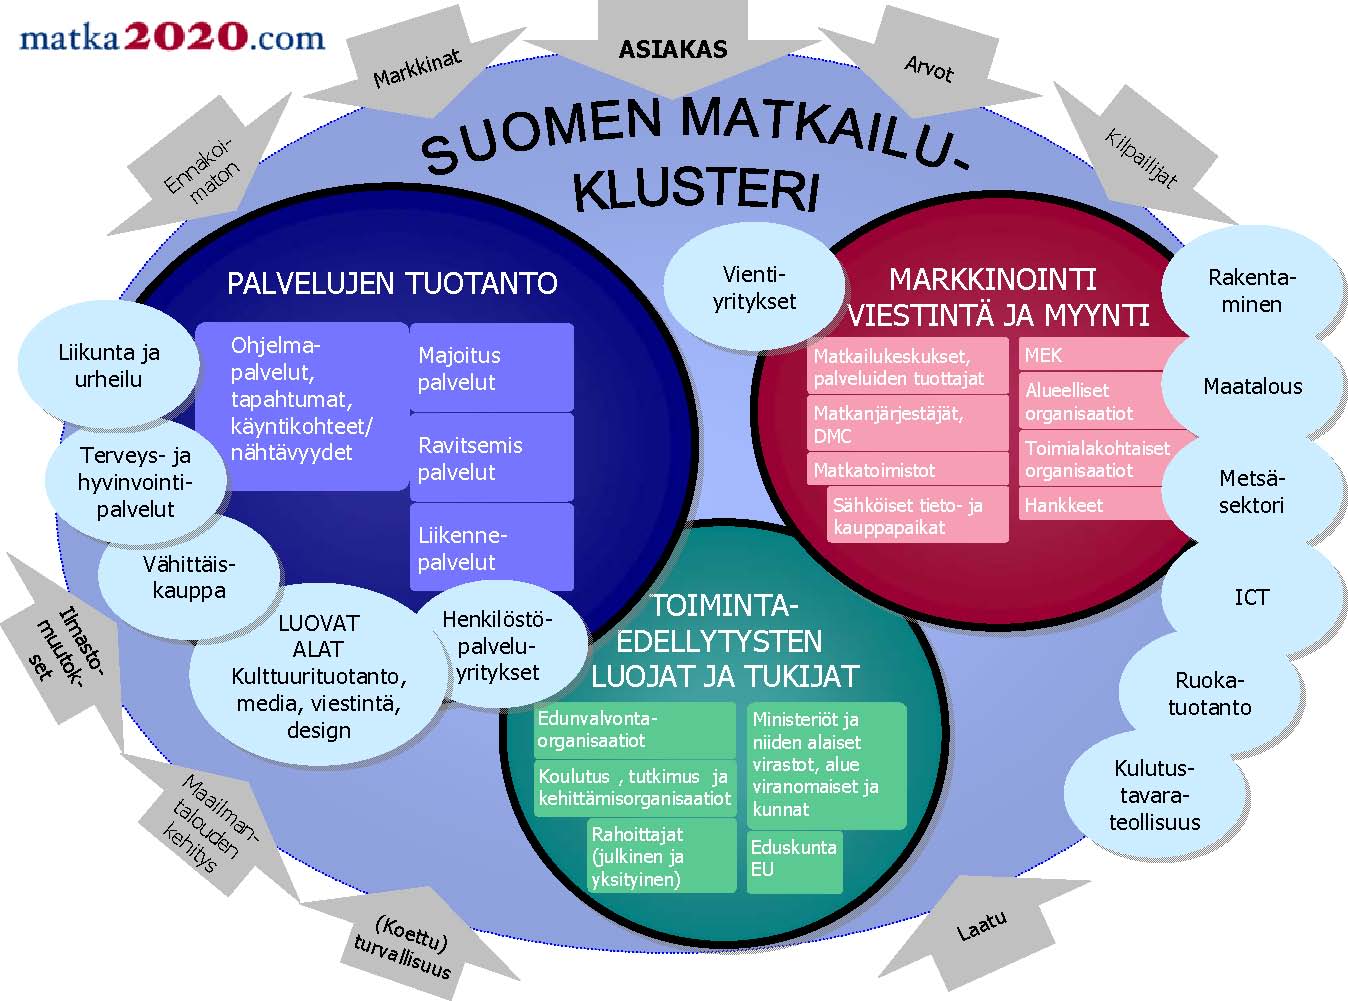 Kuva 1. Suomen matkailuklusteri (Matka 2020).